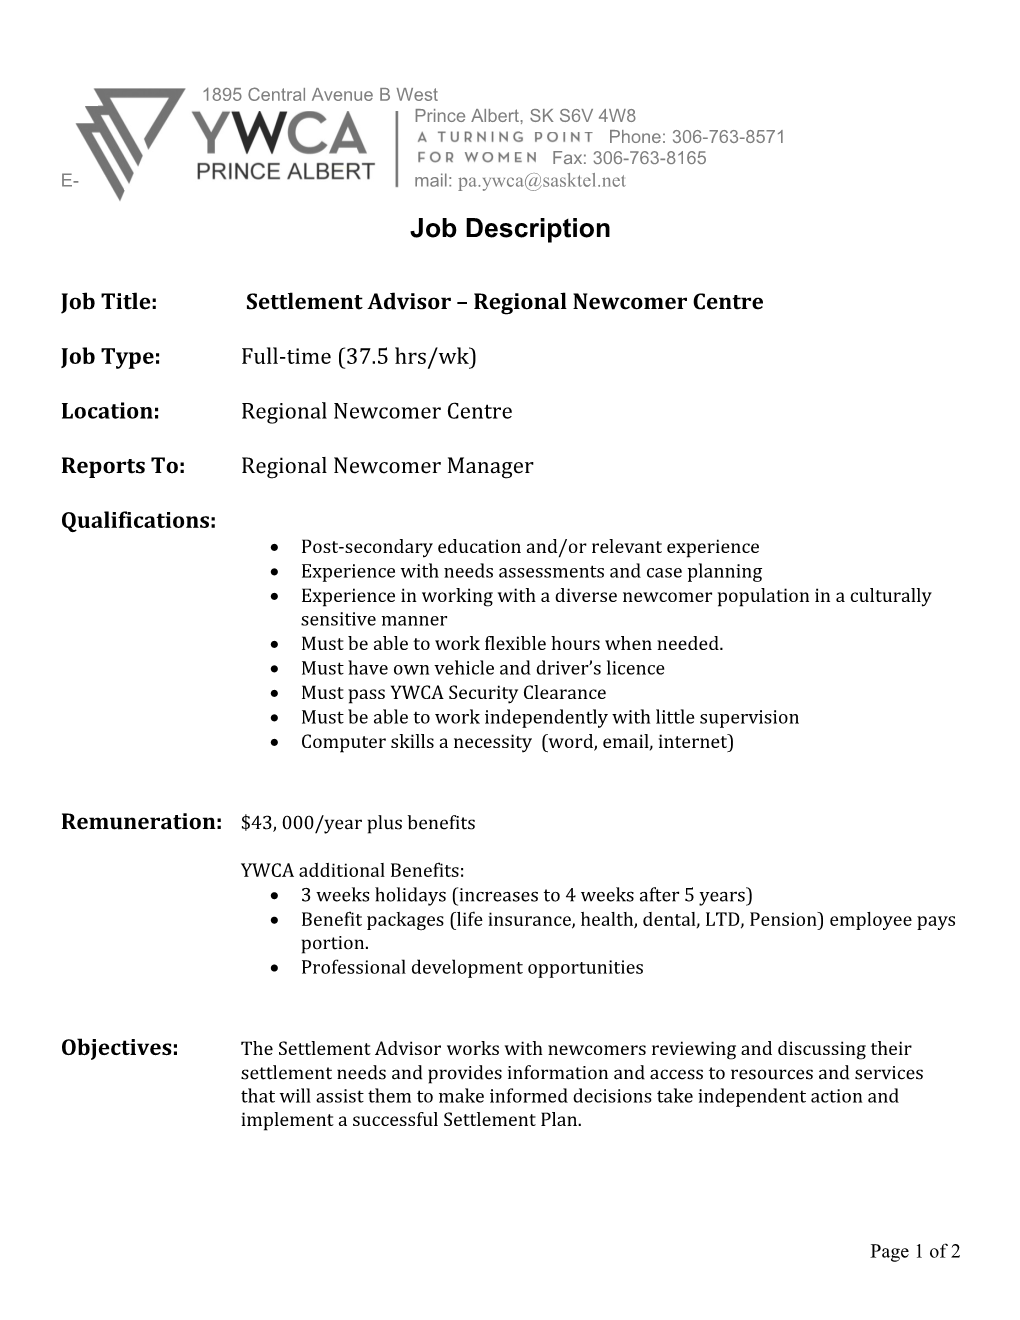 Job Title: Settlement Advisor Regional Newcomer Centre